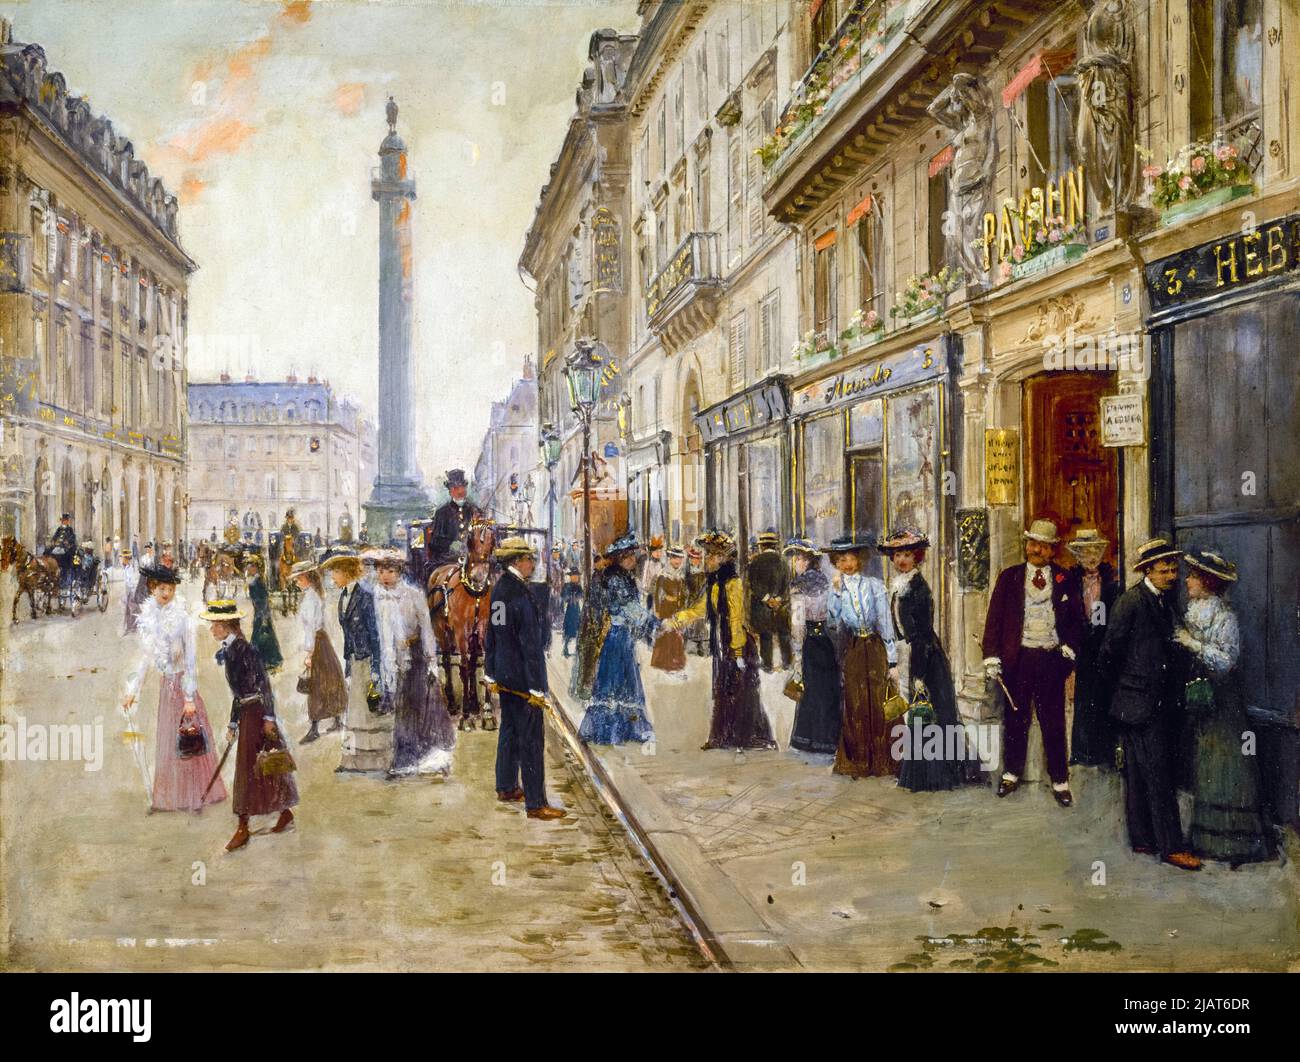 Jean Beraud, sortie des travailleurs de la Maison de Paquin, peinture à l'huile sur panneau, vers 1900 Banque D'Images